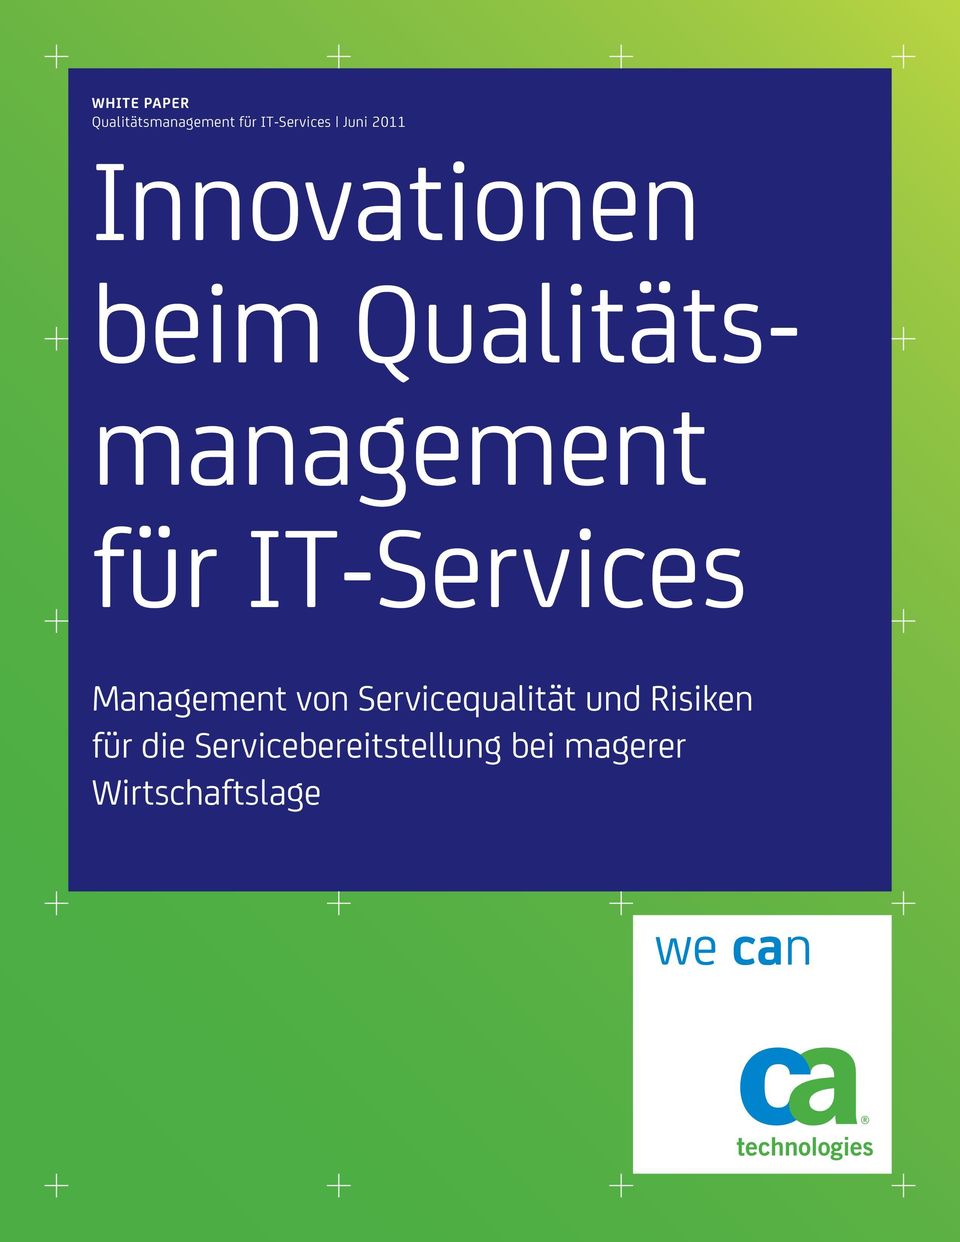 IT-Services Management von Servicequalität und Risiken